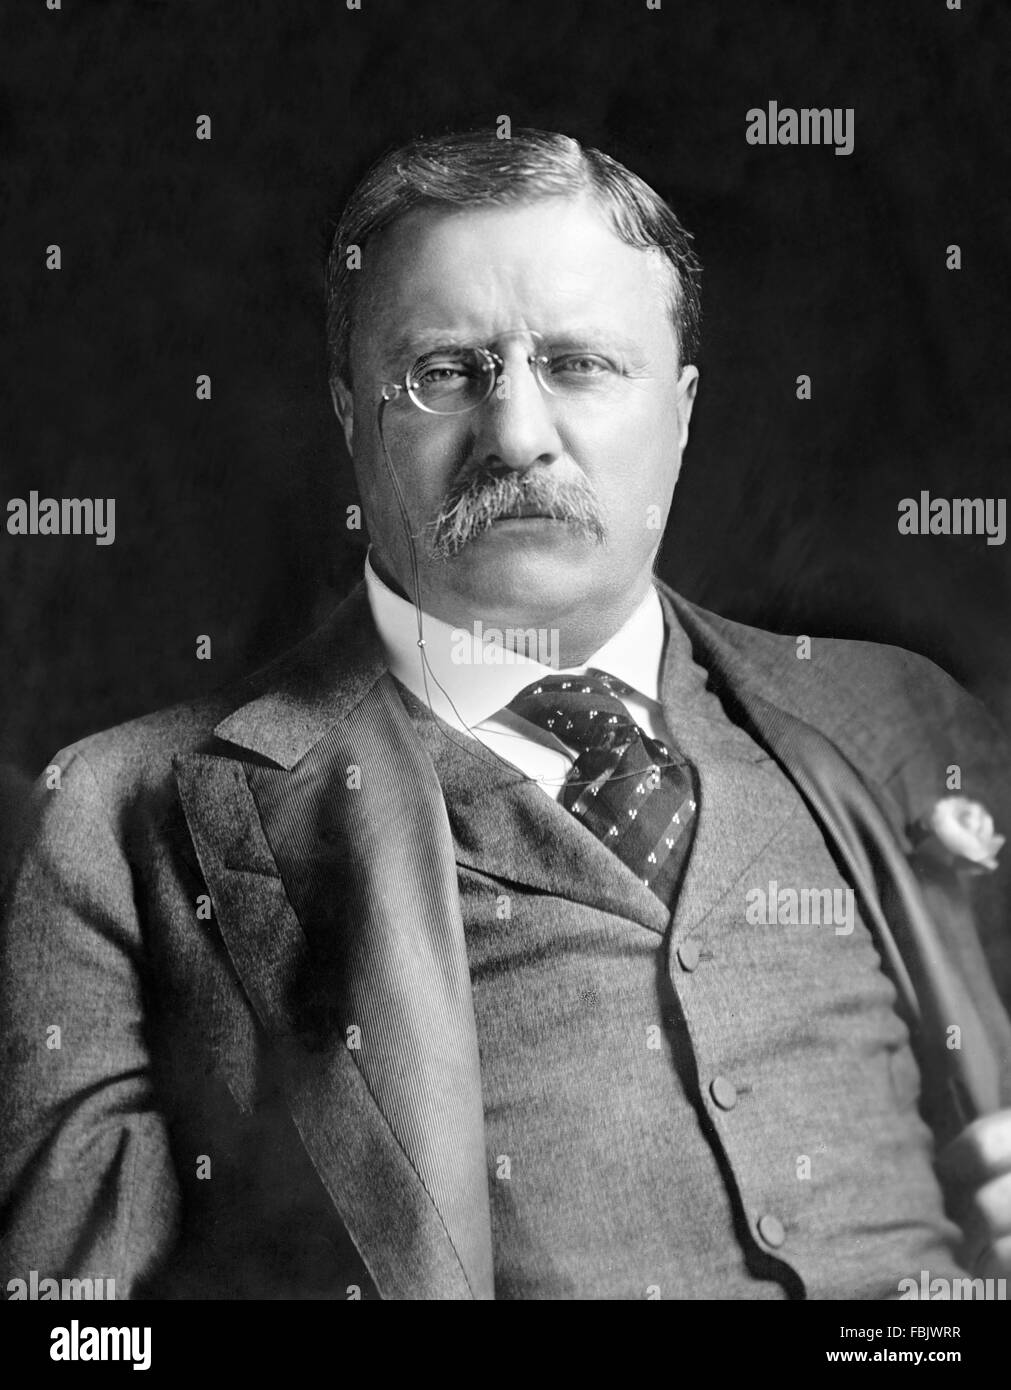 Teddy Roosevelt. Ritratto di Theodore Roosevelt, il 26th° presidente degli Stati Uniti, c.1907 Foto Stock